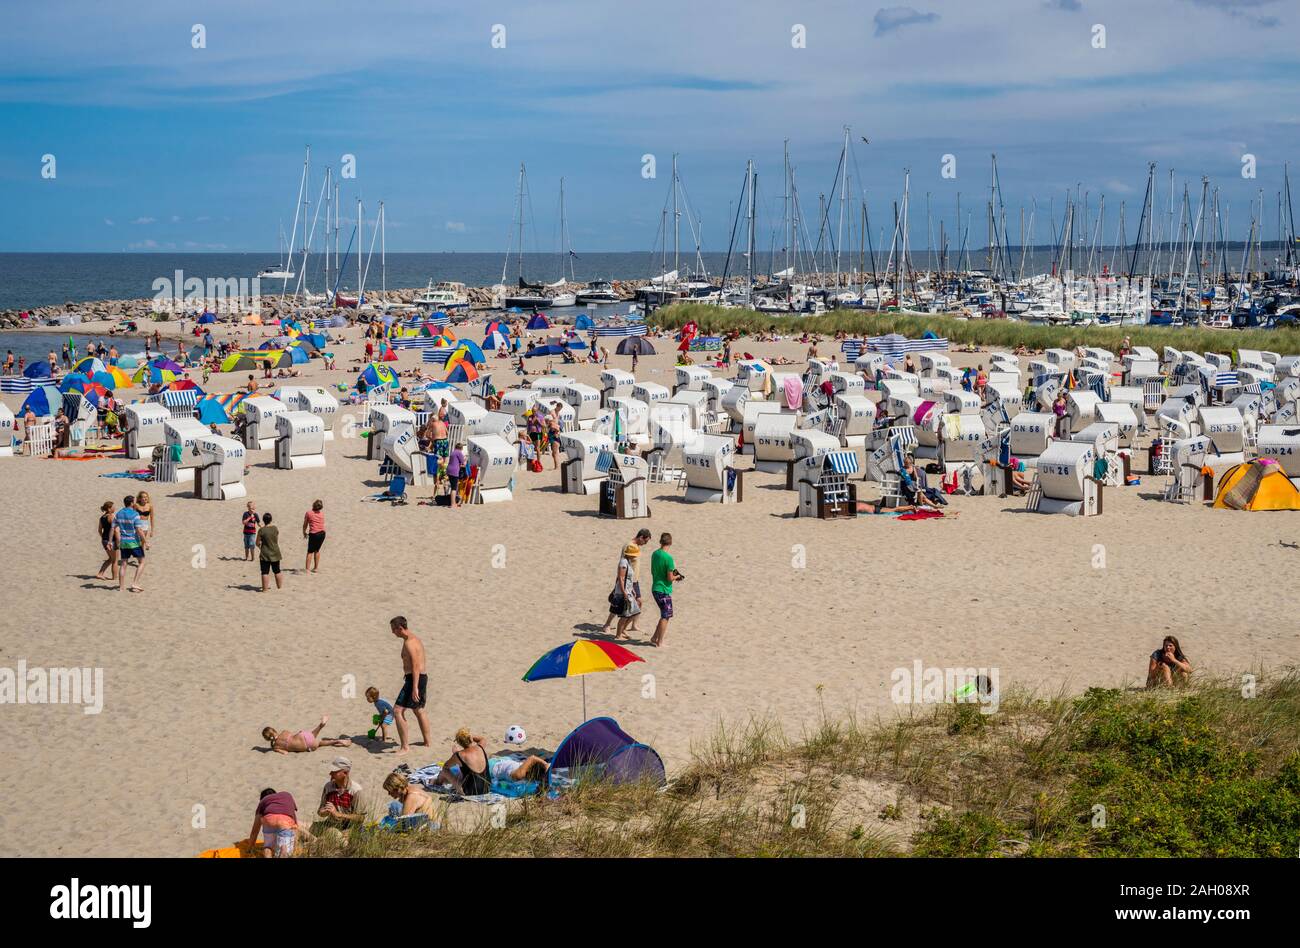 Hooded liegen (Strandkörbe) am Strand des Ostseebades Kühlungsborn, Mecklenburg-Vorpommern, Deutschland Stockfoto